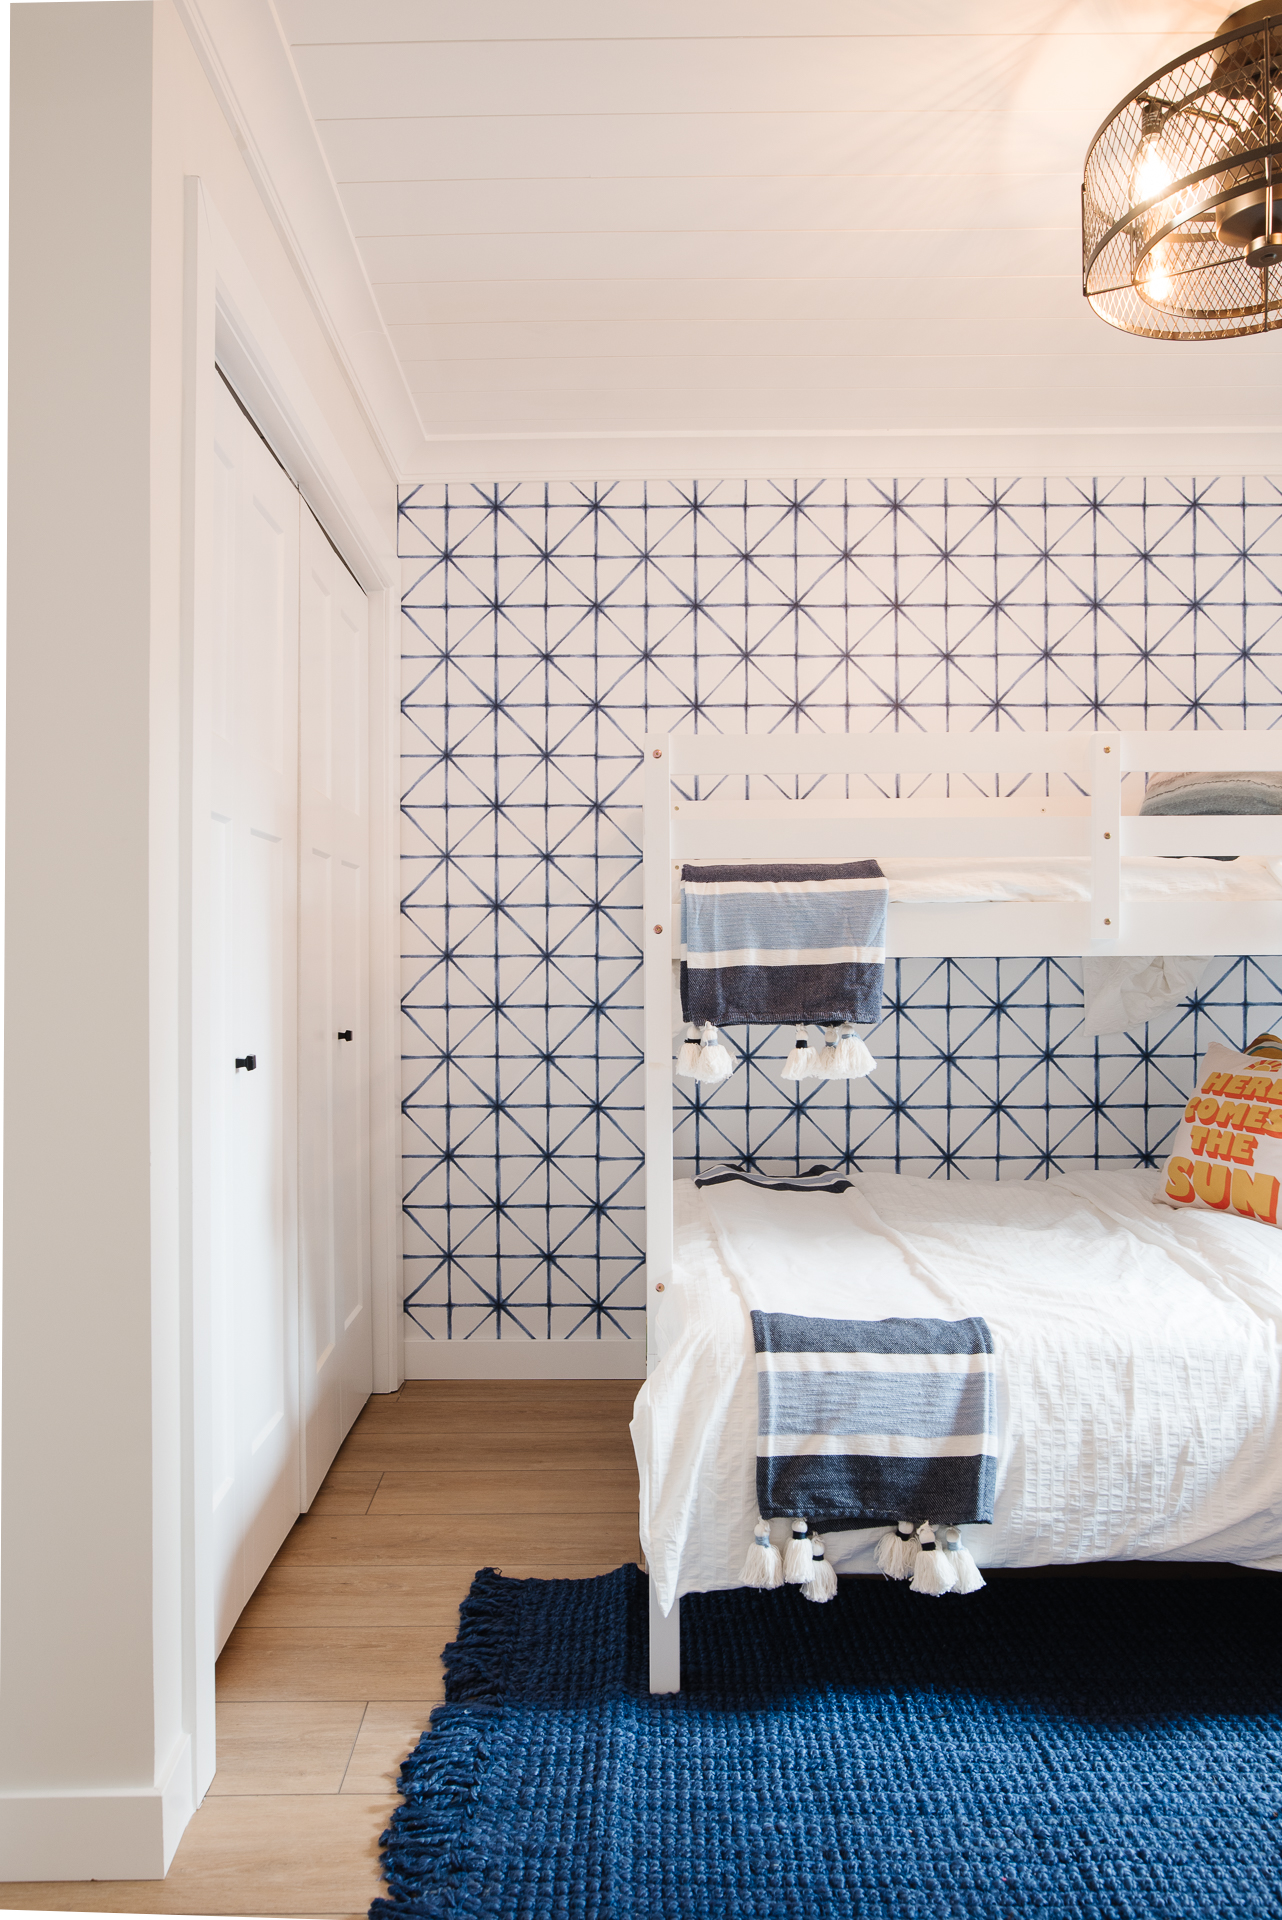 Venez voir comment une chambre simple et datée a été transformée en une chambre lumineuse et gaie avec un lit superposé et des couleurs bleu, jaune et blanc